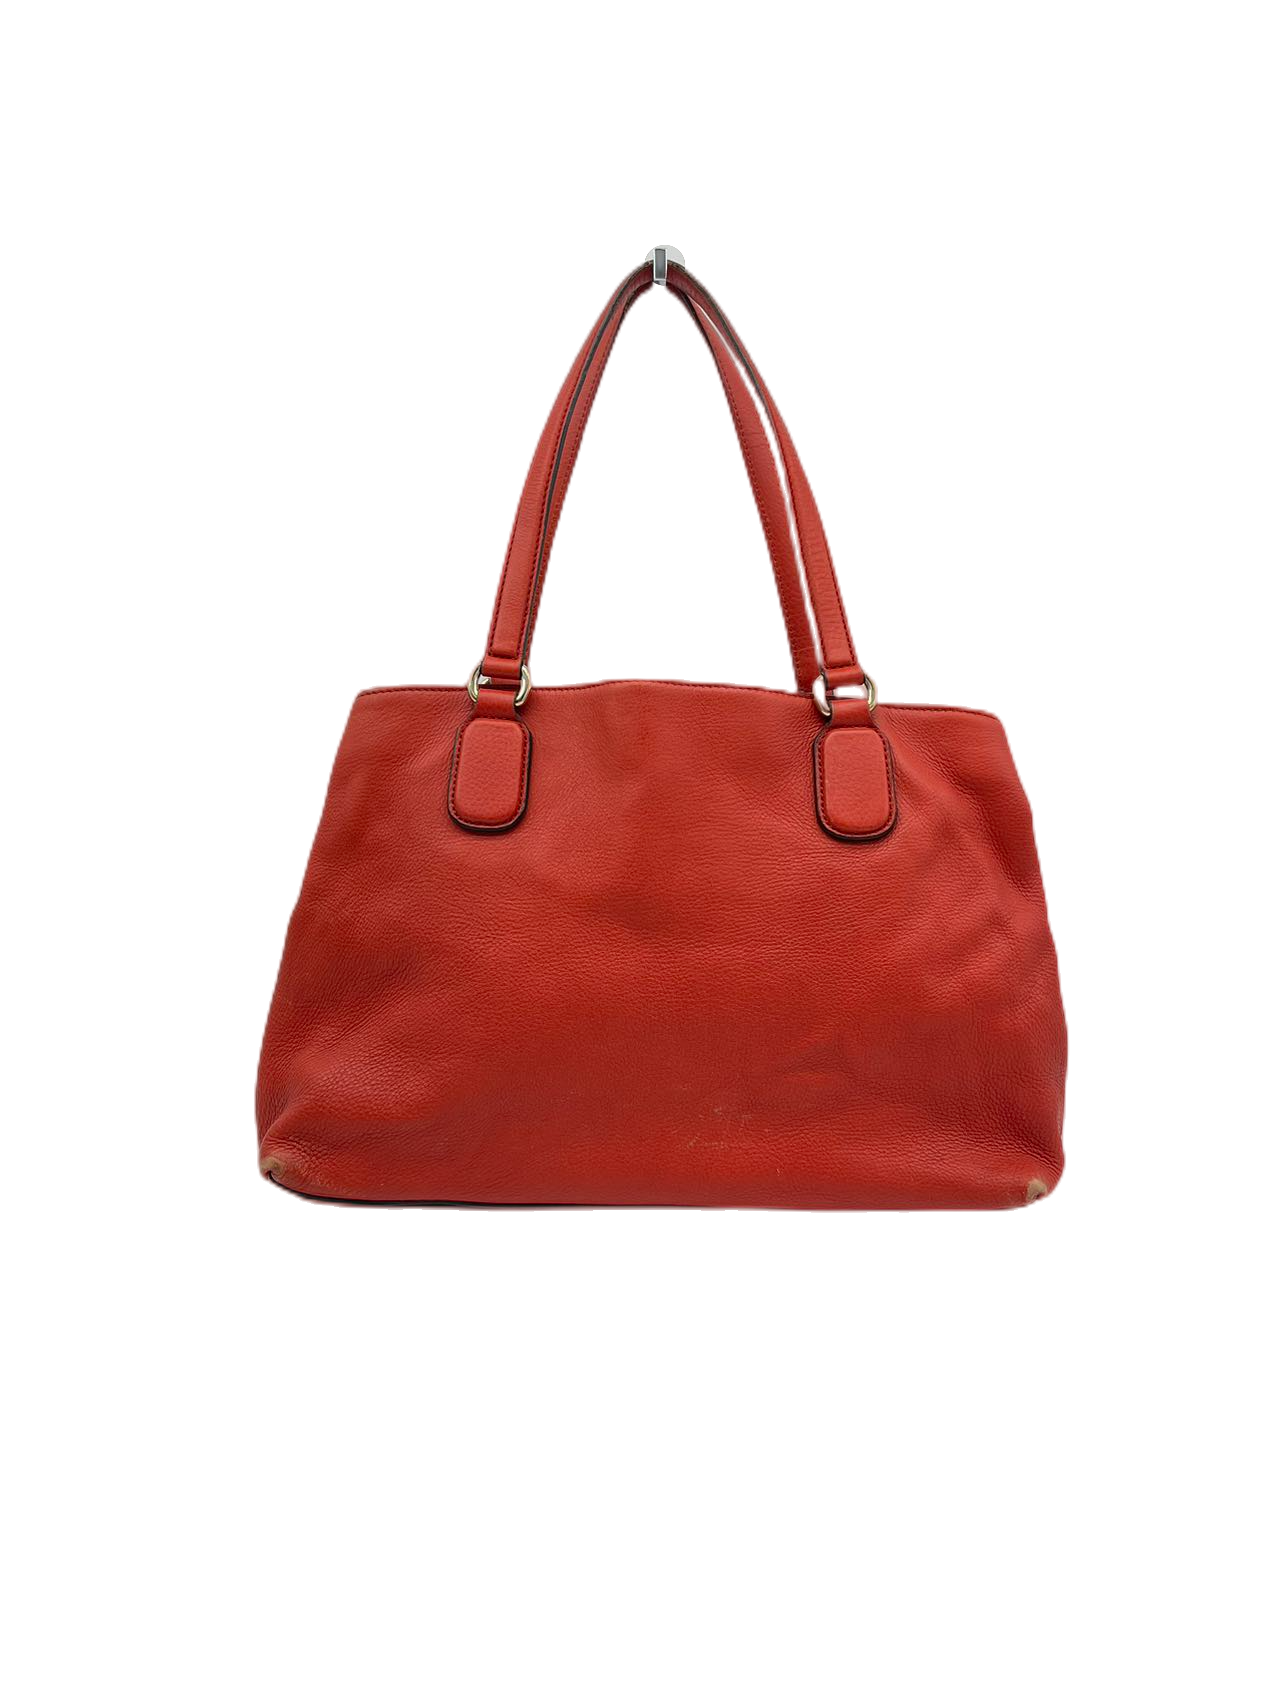 Preloved Gucci GG Logo leather Tassel Soho Totes Shoulder Bag